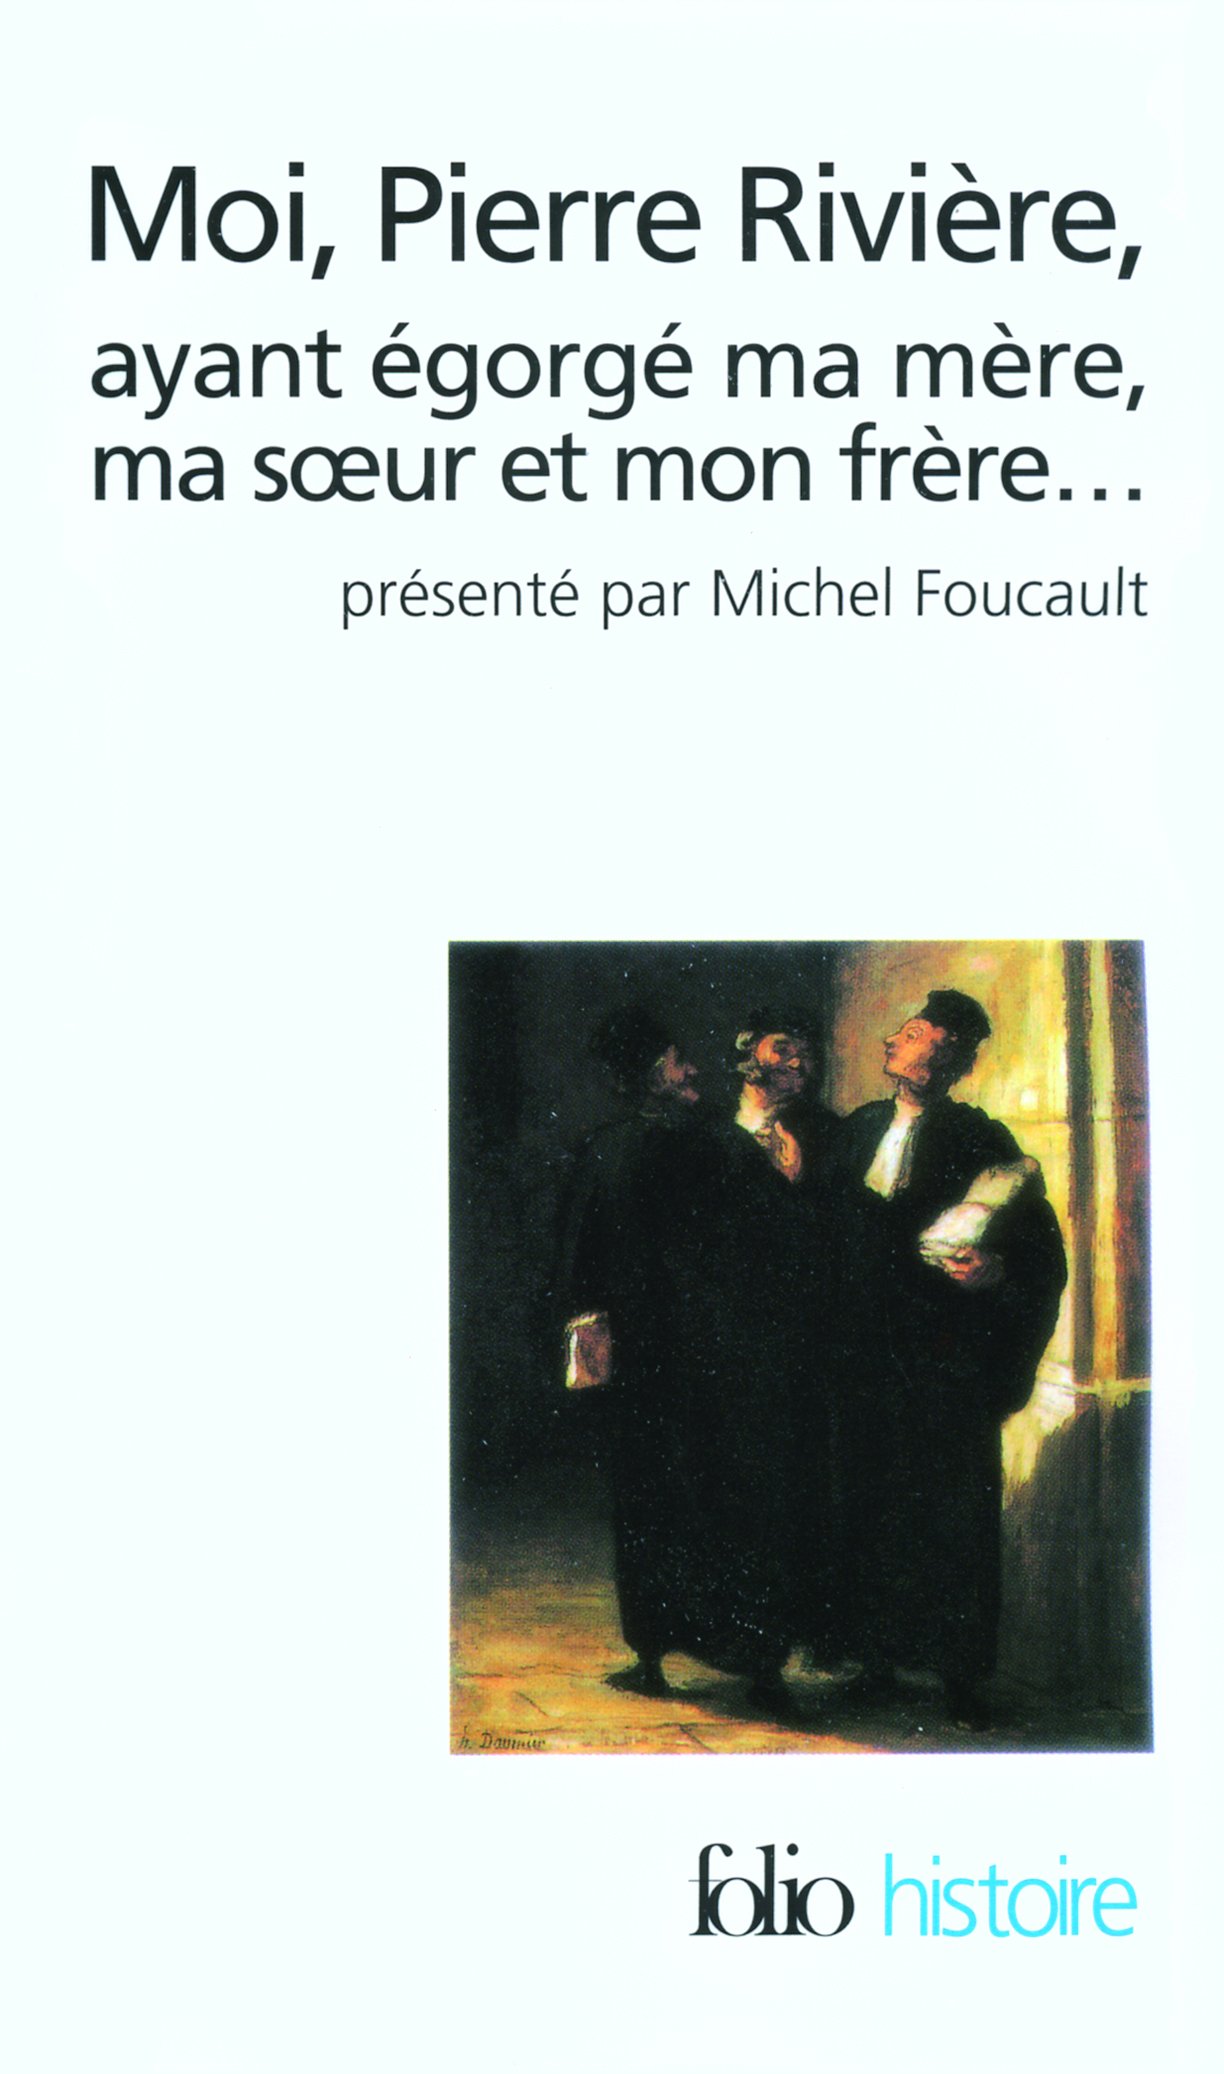 Moi, Pierre Riviere, ayant egorge ma mere, ma soeur et mon frere | Michel Foucault